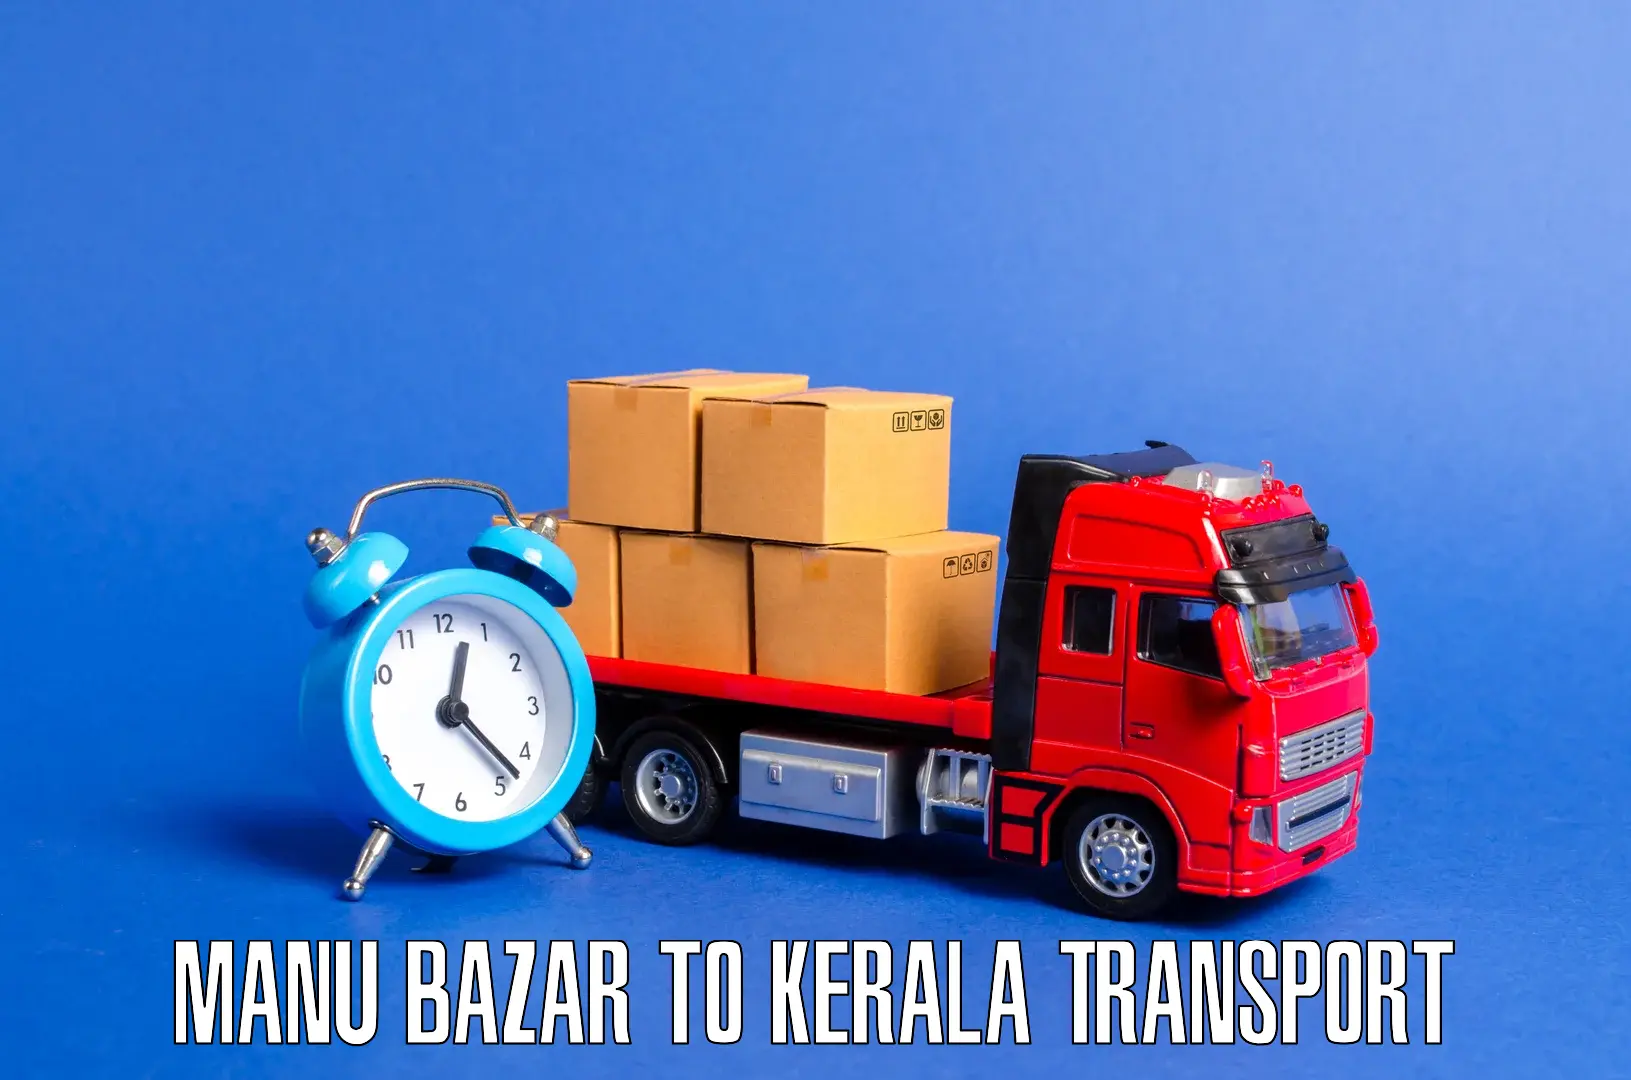 Online transport booking Manu Bazar to Kalanjoor